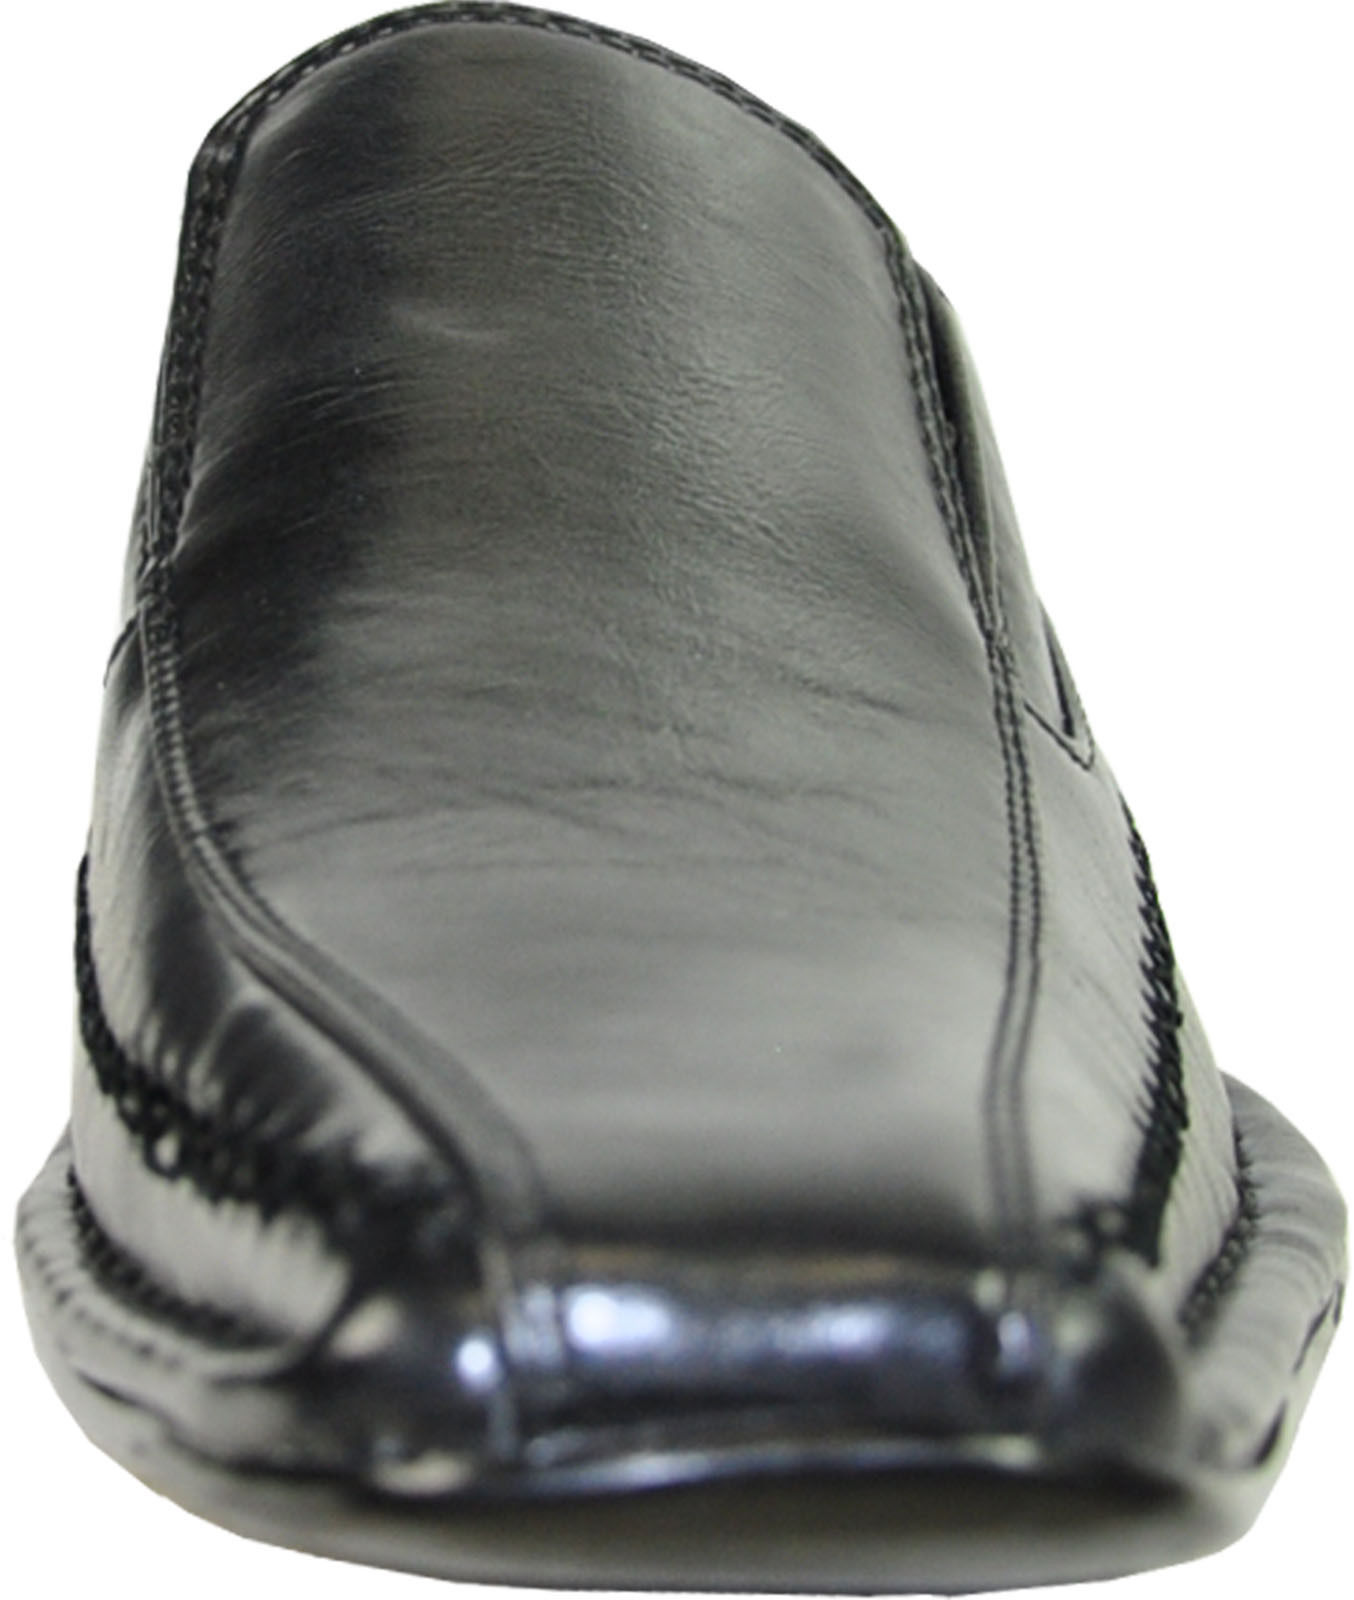 Coronado Marino-2 Dress Shoe Fashion Point Bicycle Toe with Leather Lining Black(8.5 D(M)US - image 2 of 7